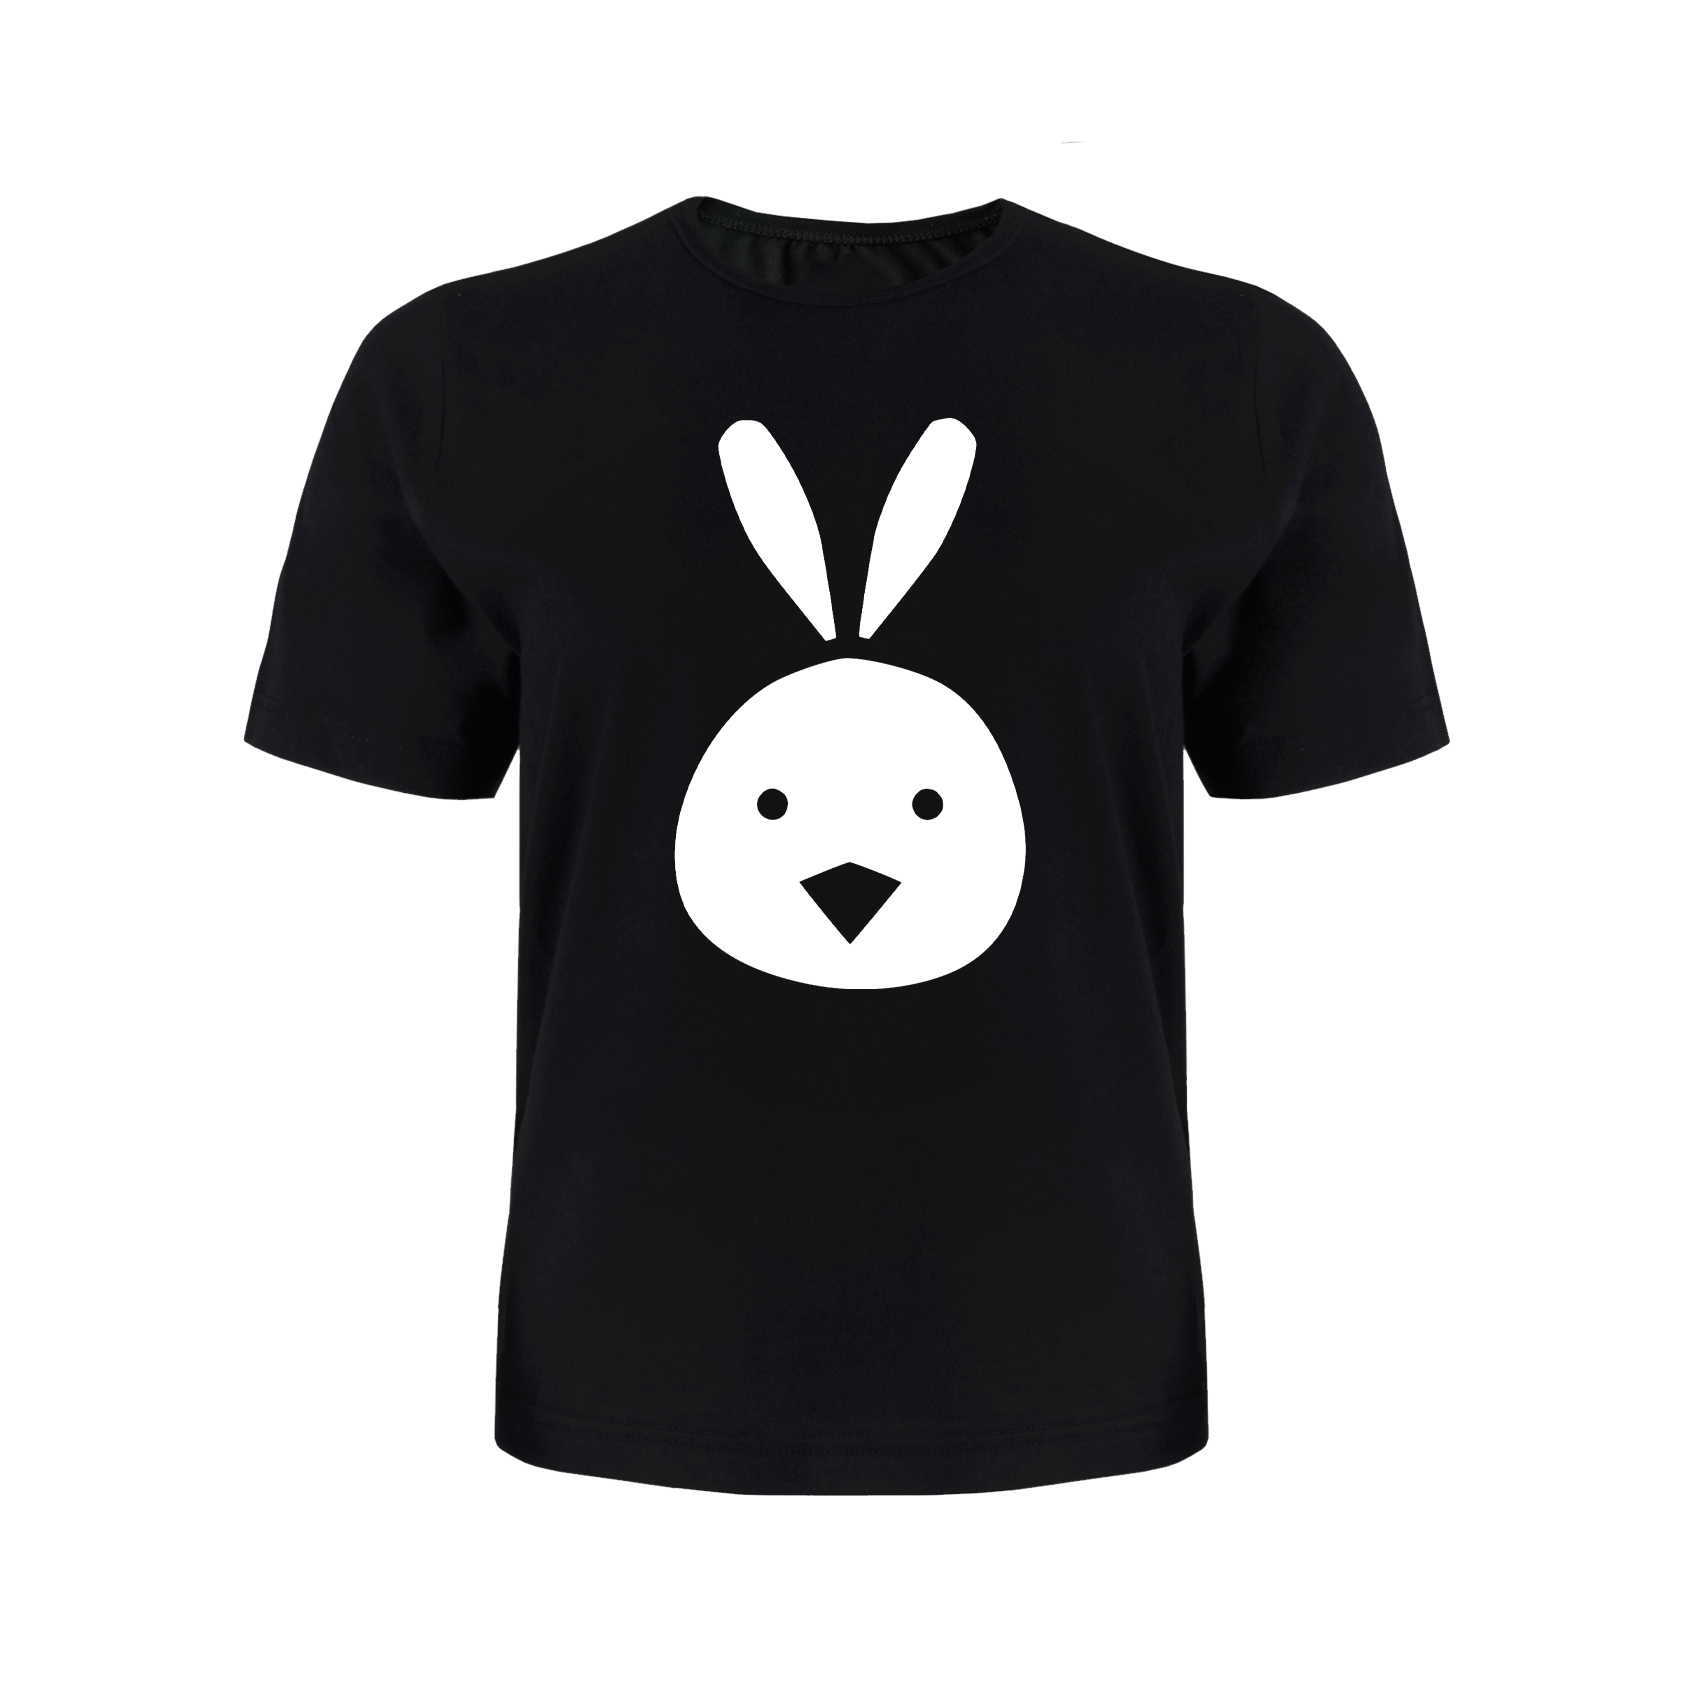 تی شرت آستین کوتاه پسرانه مدل خرگوش کد P021 رنگ مشکی